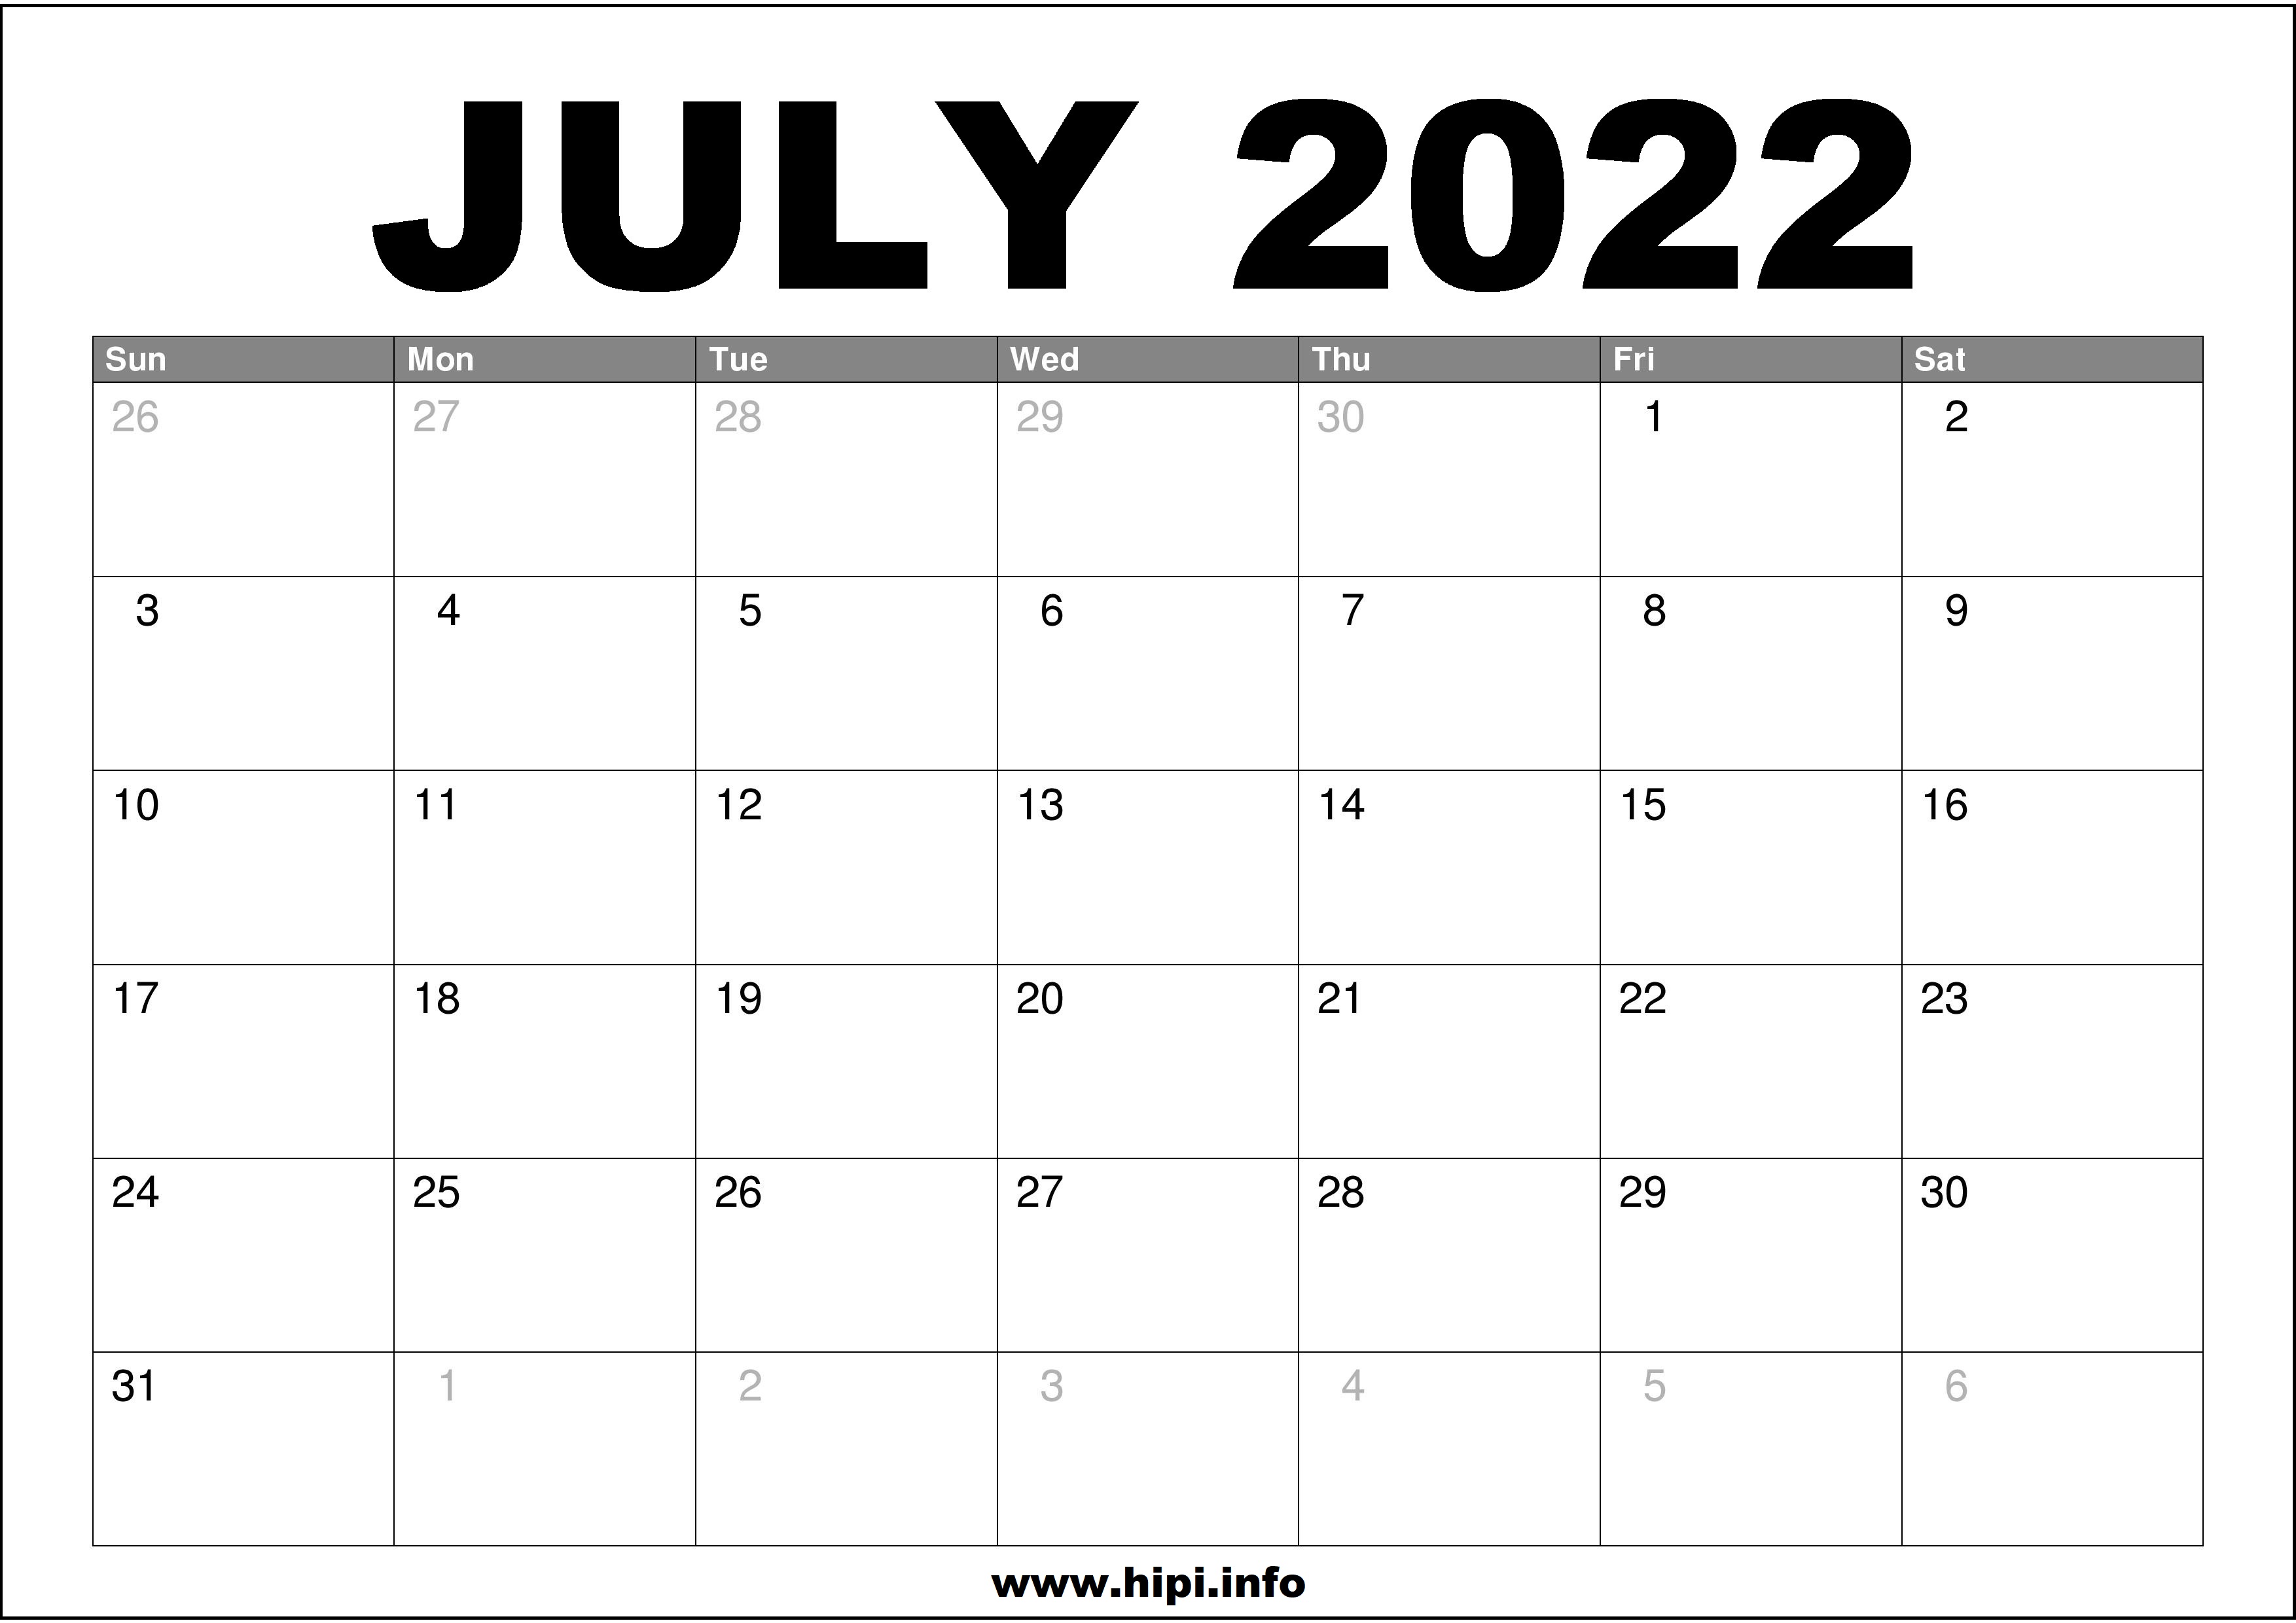 Printable 2022 July Calendar July 2022 Calendar Printable Free - Hipi.info | Calendars Printable Free